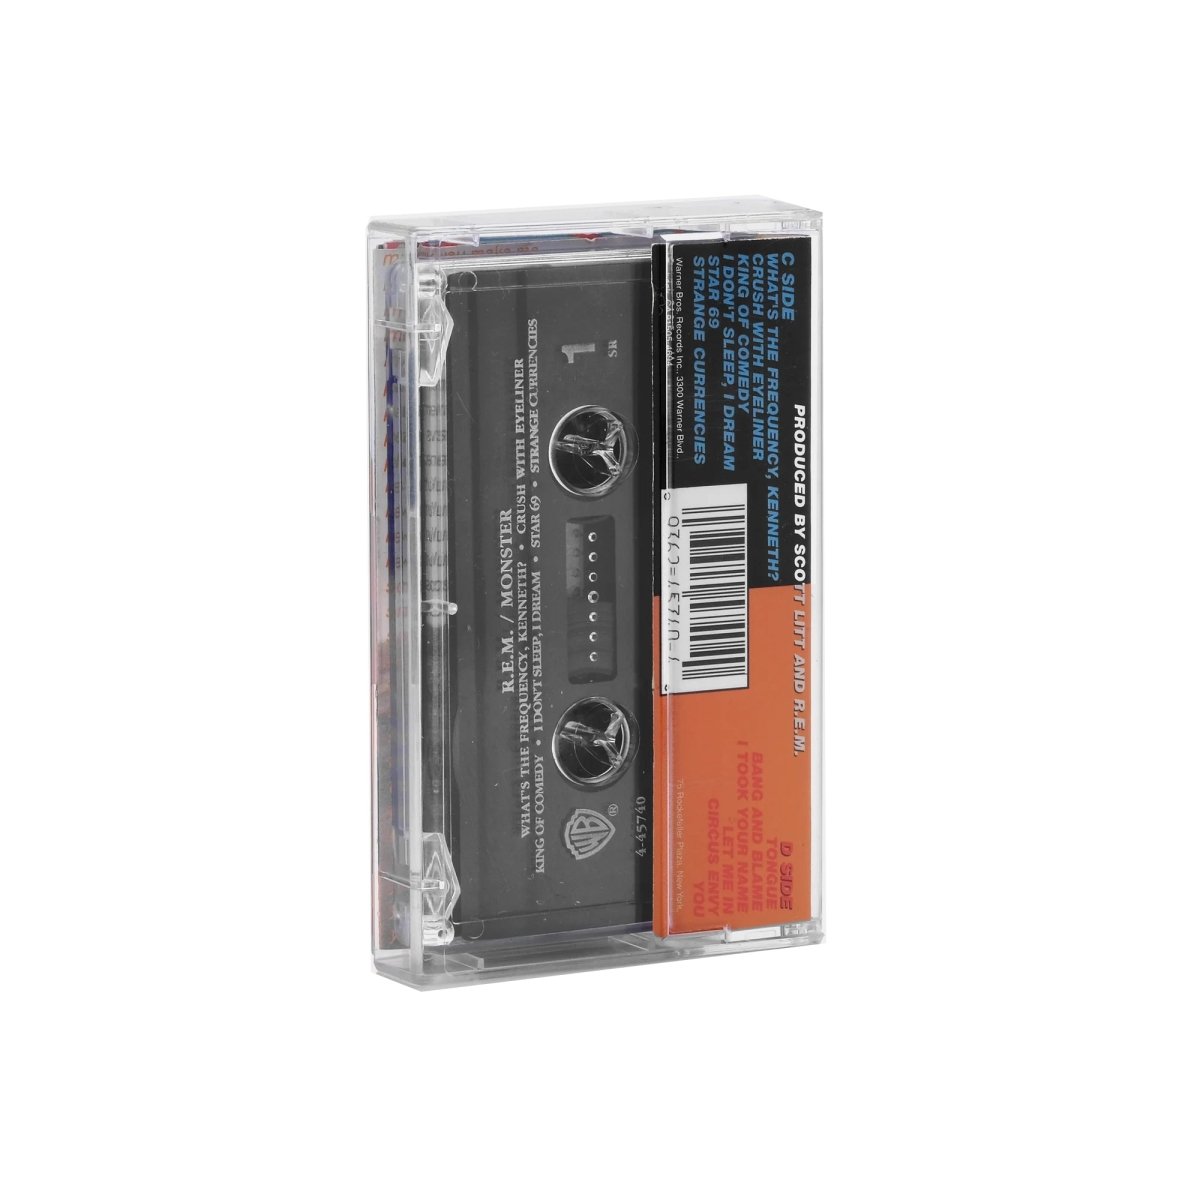 R.E.M. - Monster Music Cassette Tapes Vinyl